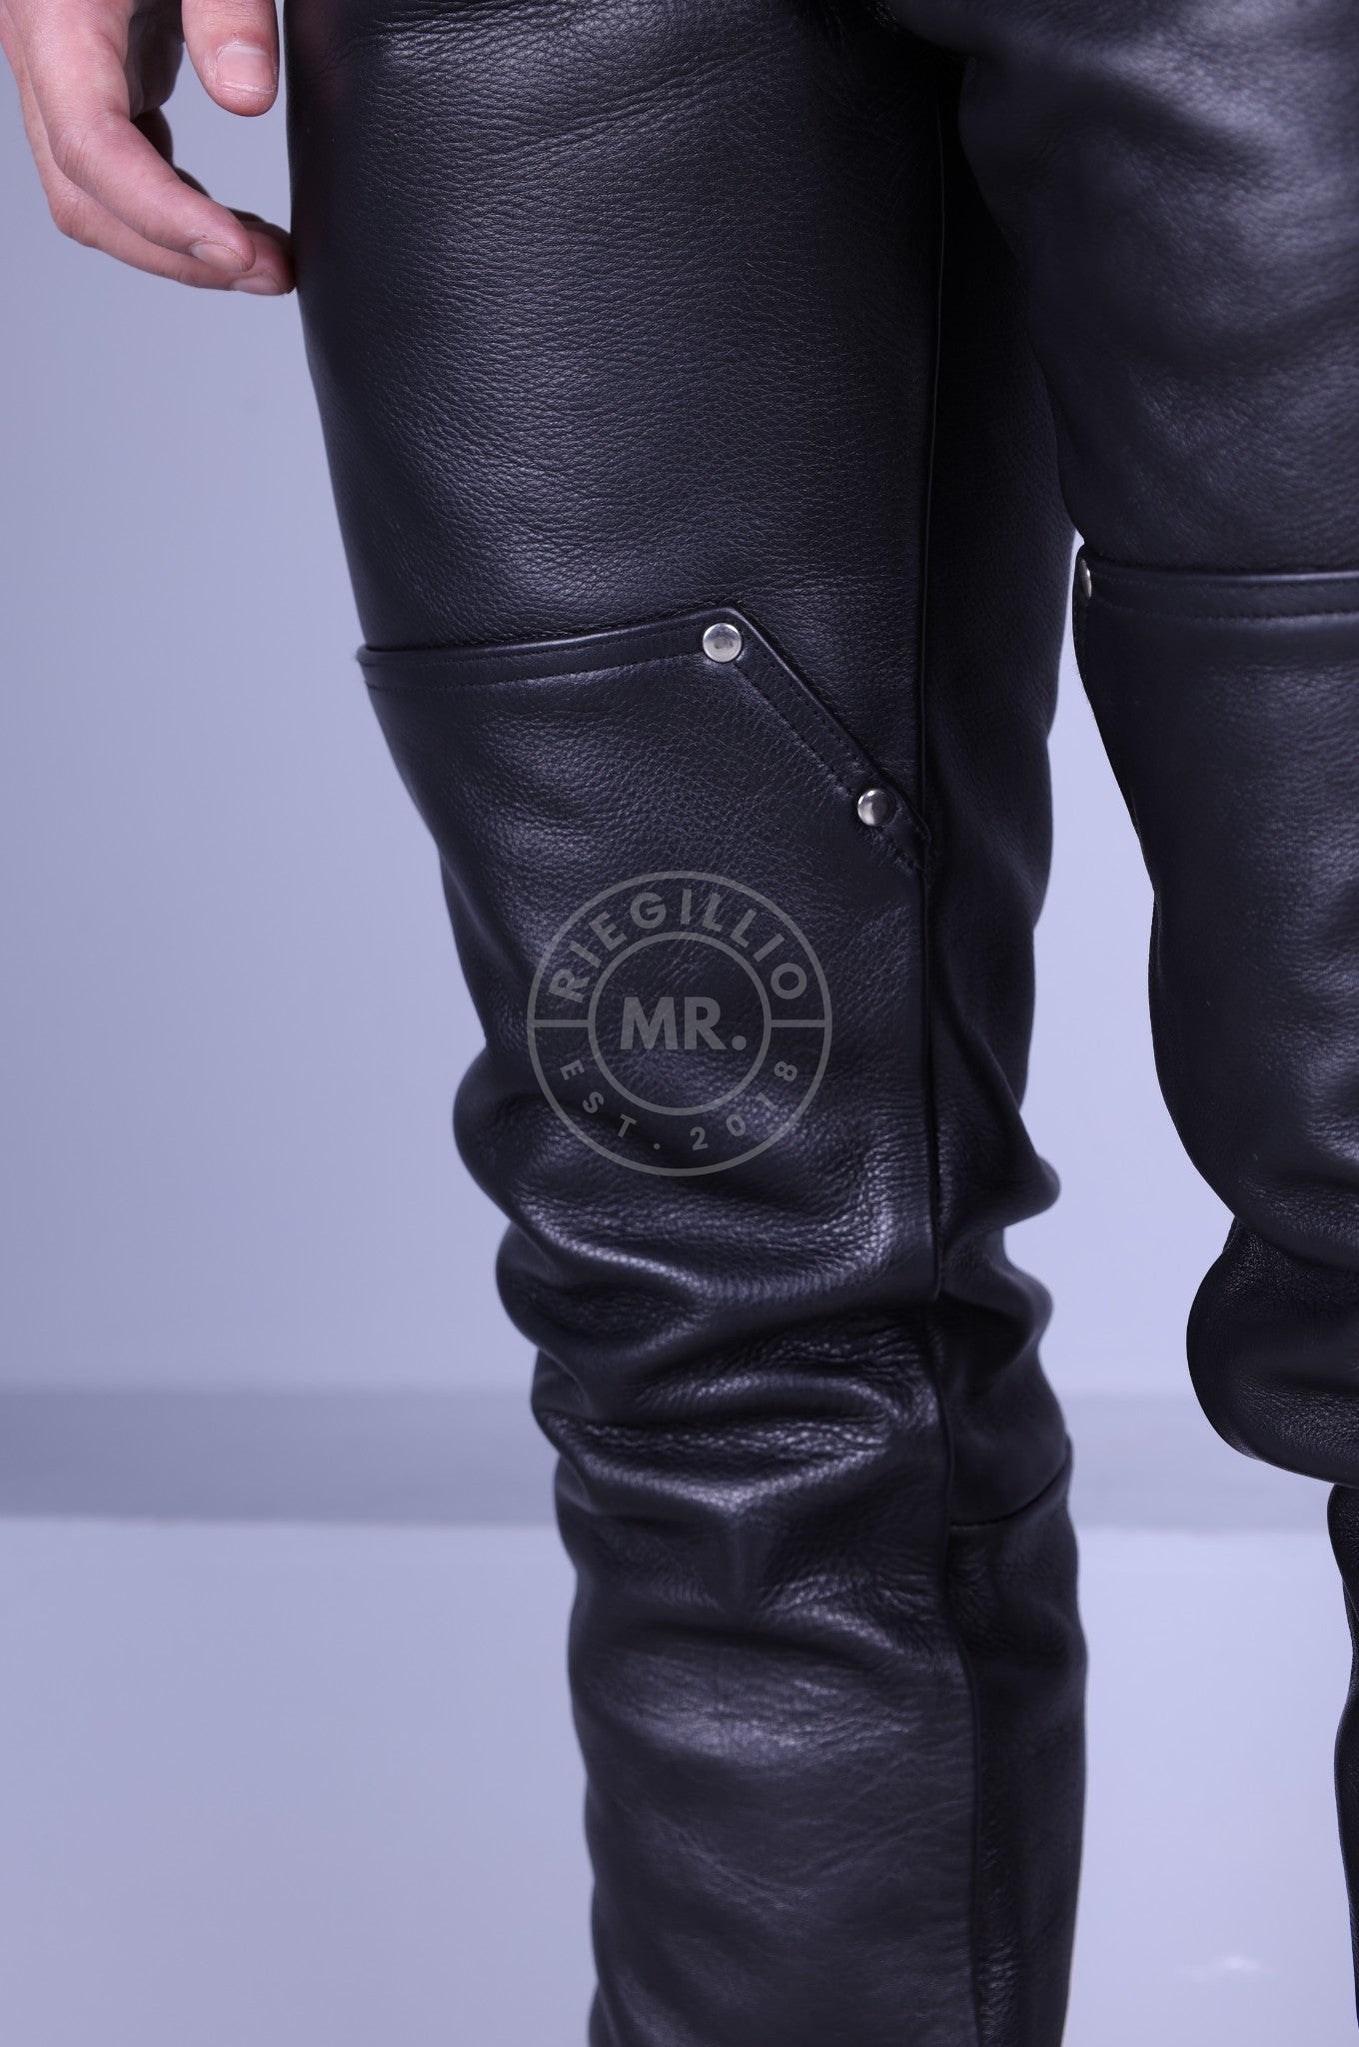 Black Leather Carpenter Pants at MR. Riegillio